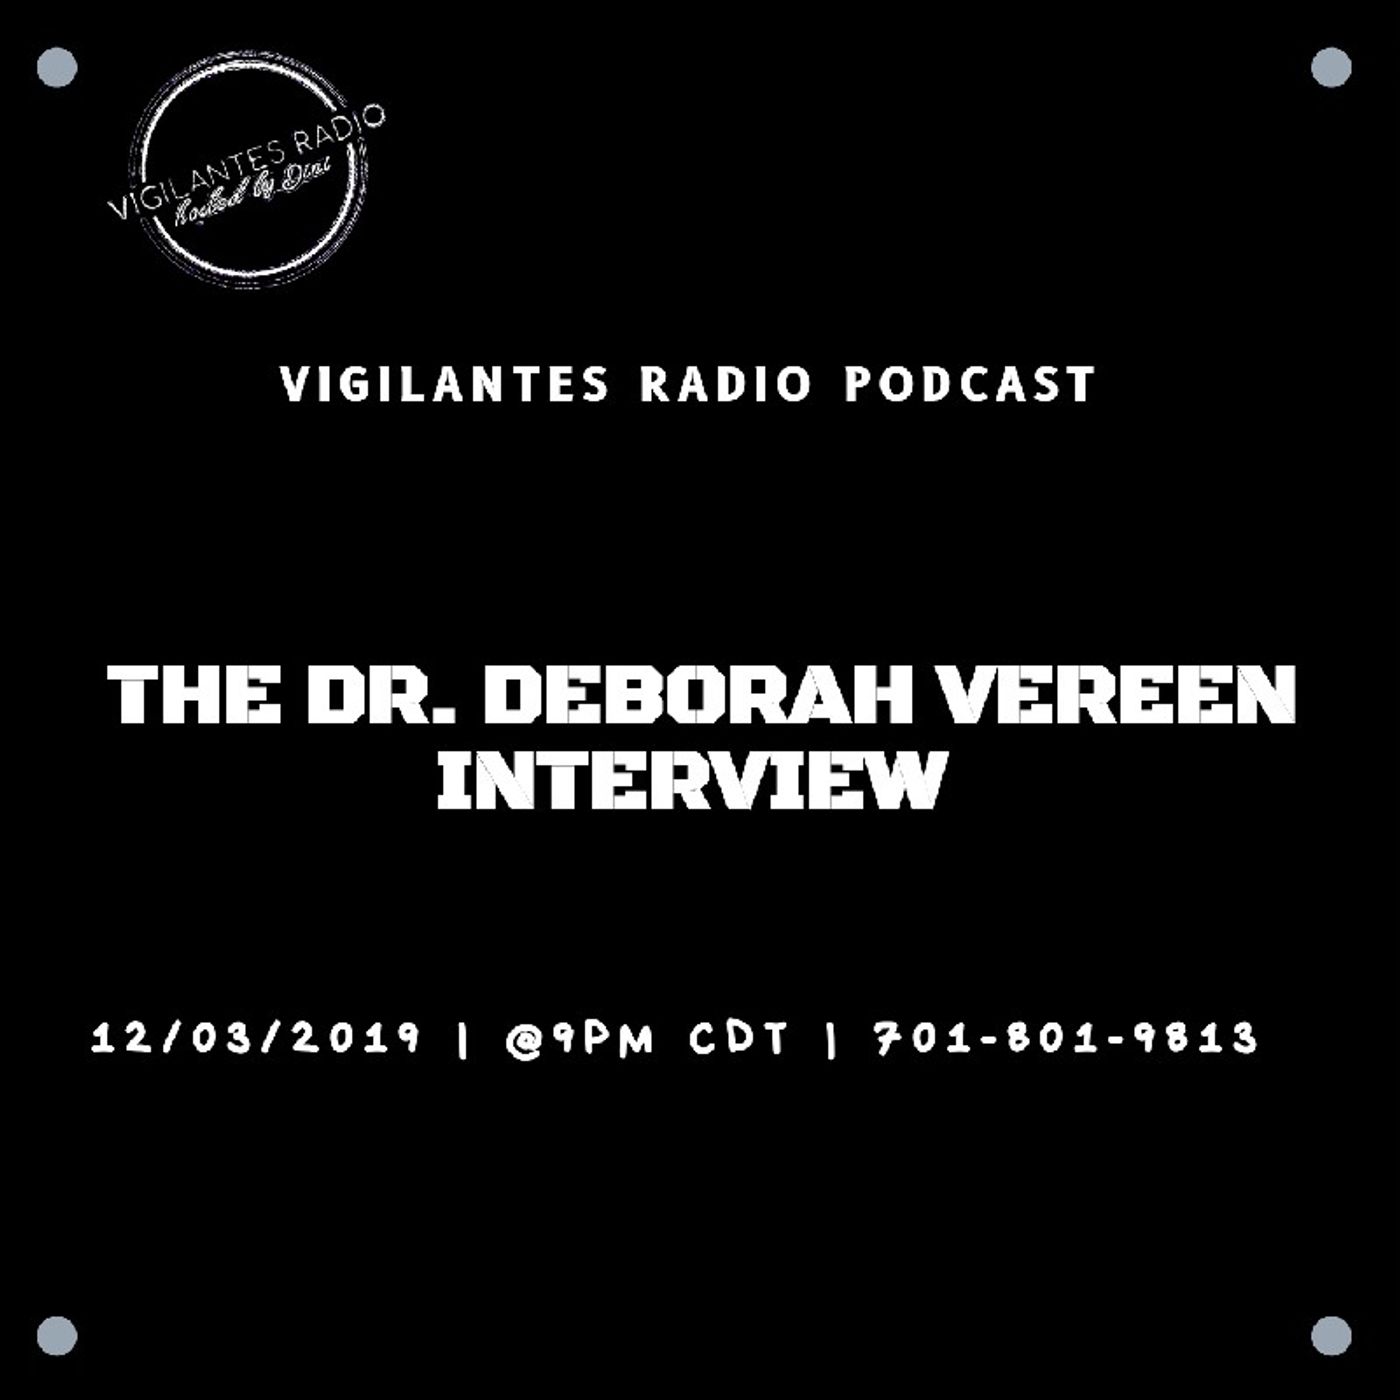 The Dr. Deborah Vereen Interview. Image